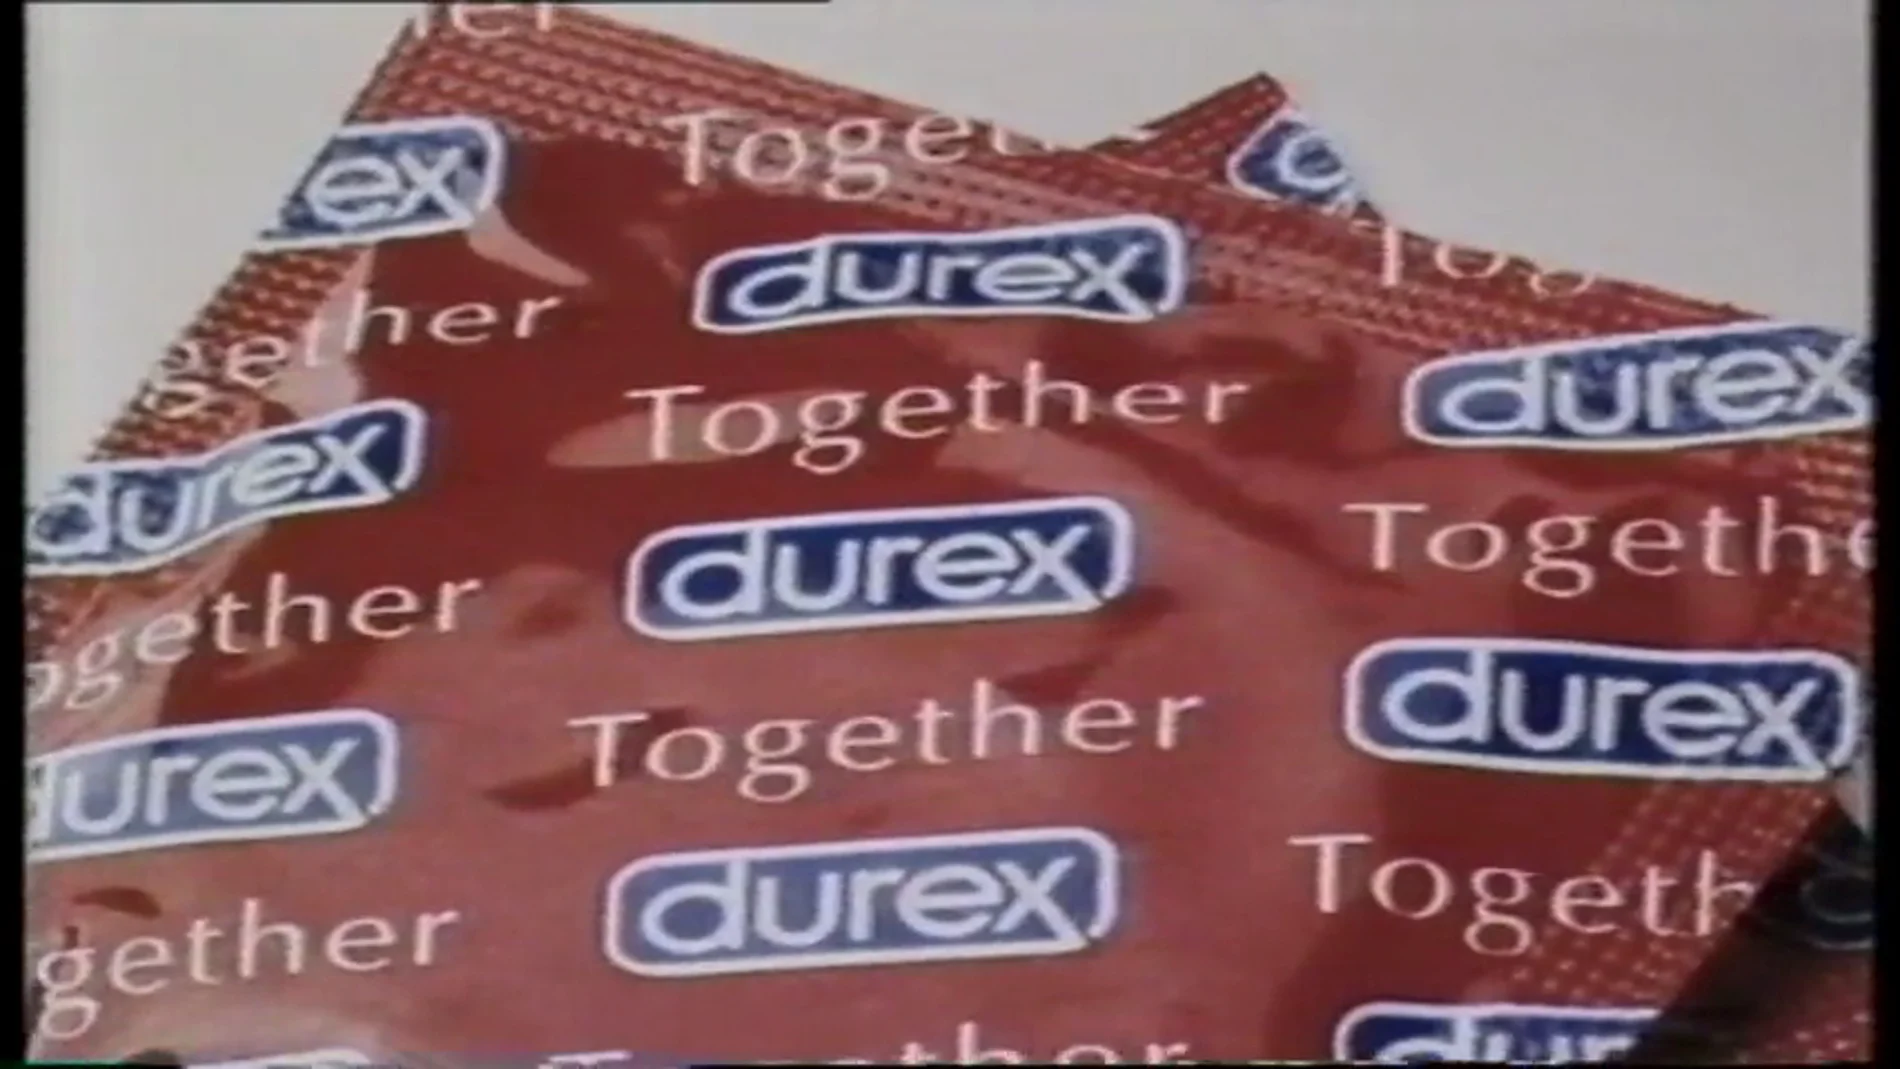  Alertan de la detección de preservativos Durex falsificados